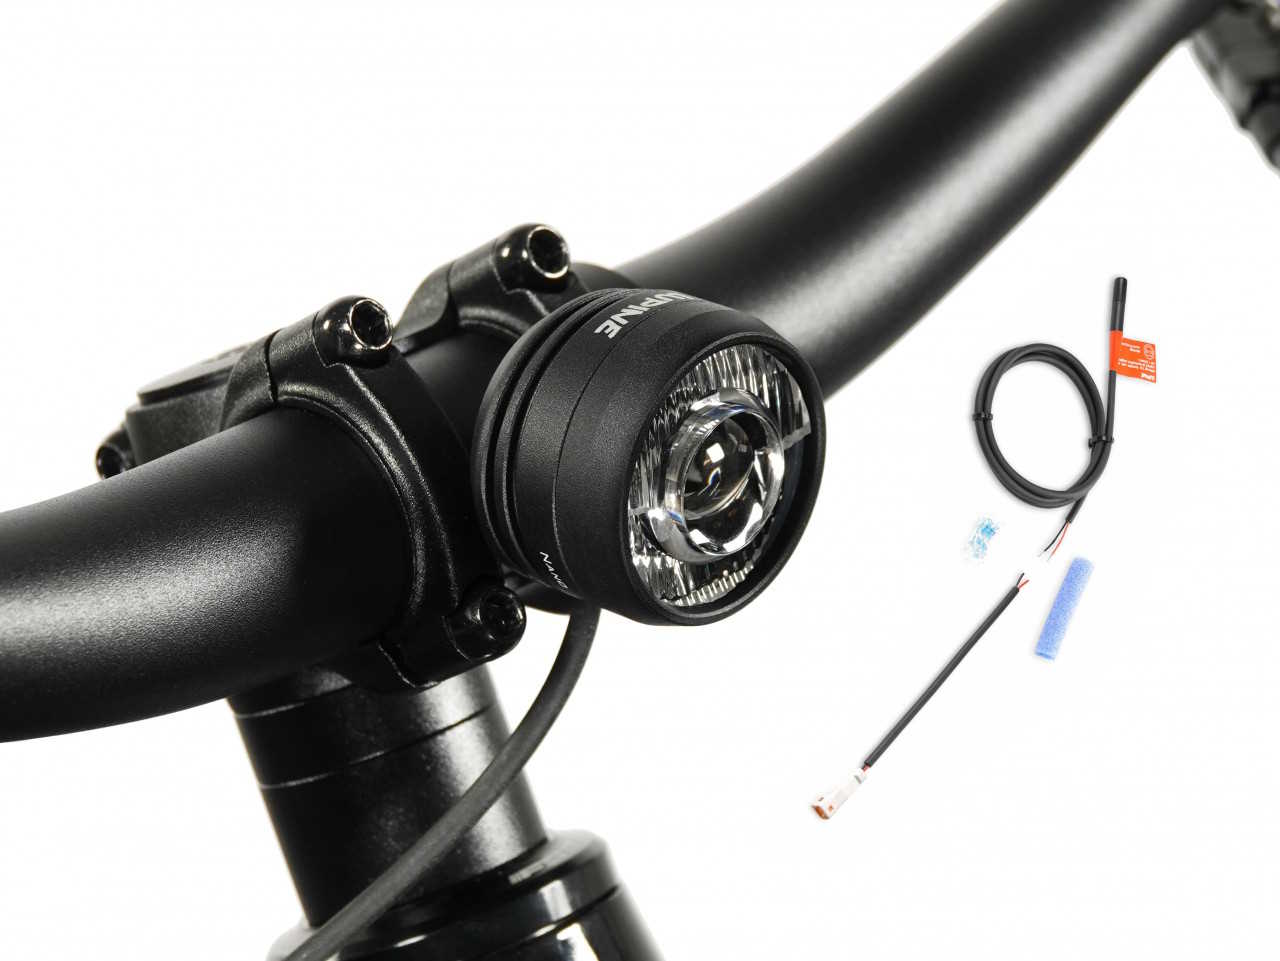 Produktbild von Lupine SL Nano für E-Bikes mit Giant Motor, E-Bike Beleuchtung mit 900 Lumen Fernlicht, Lenkerhalter 31,8mm + Bluetooth Fernbedienung